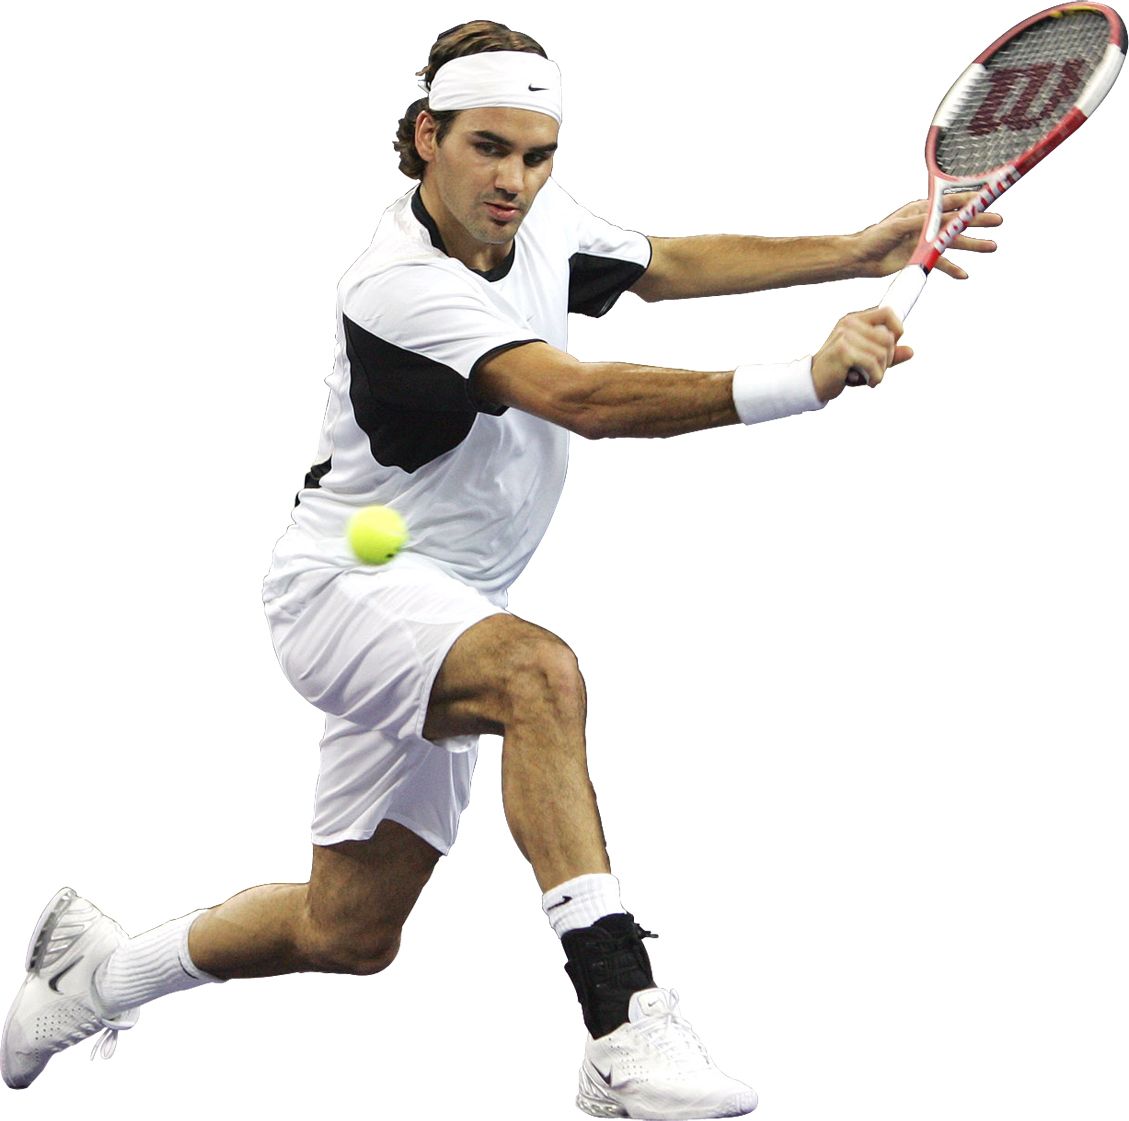 Tennis player man PNG image    图片编号:10397